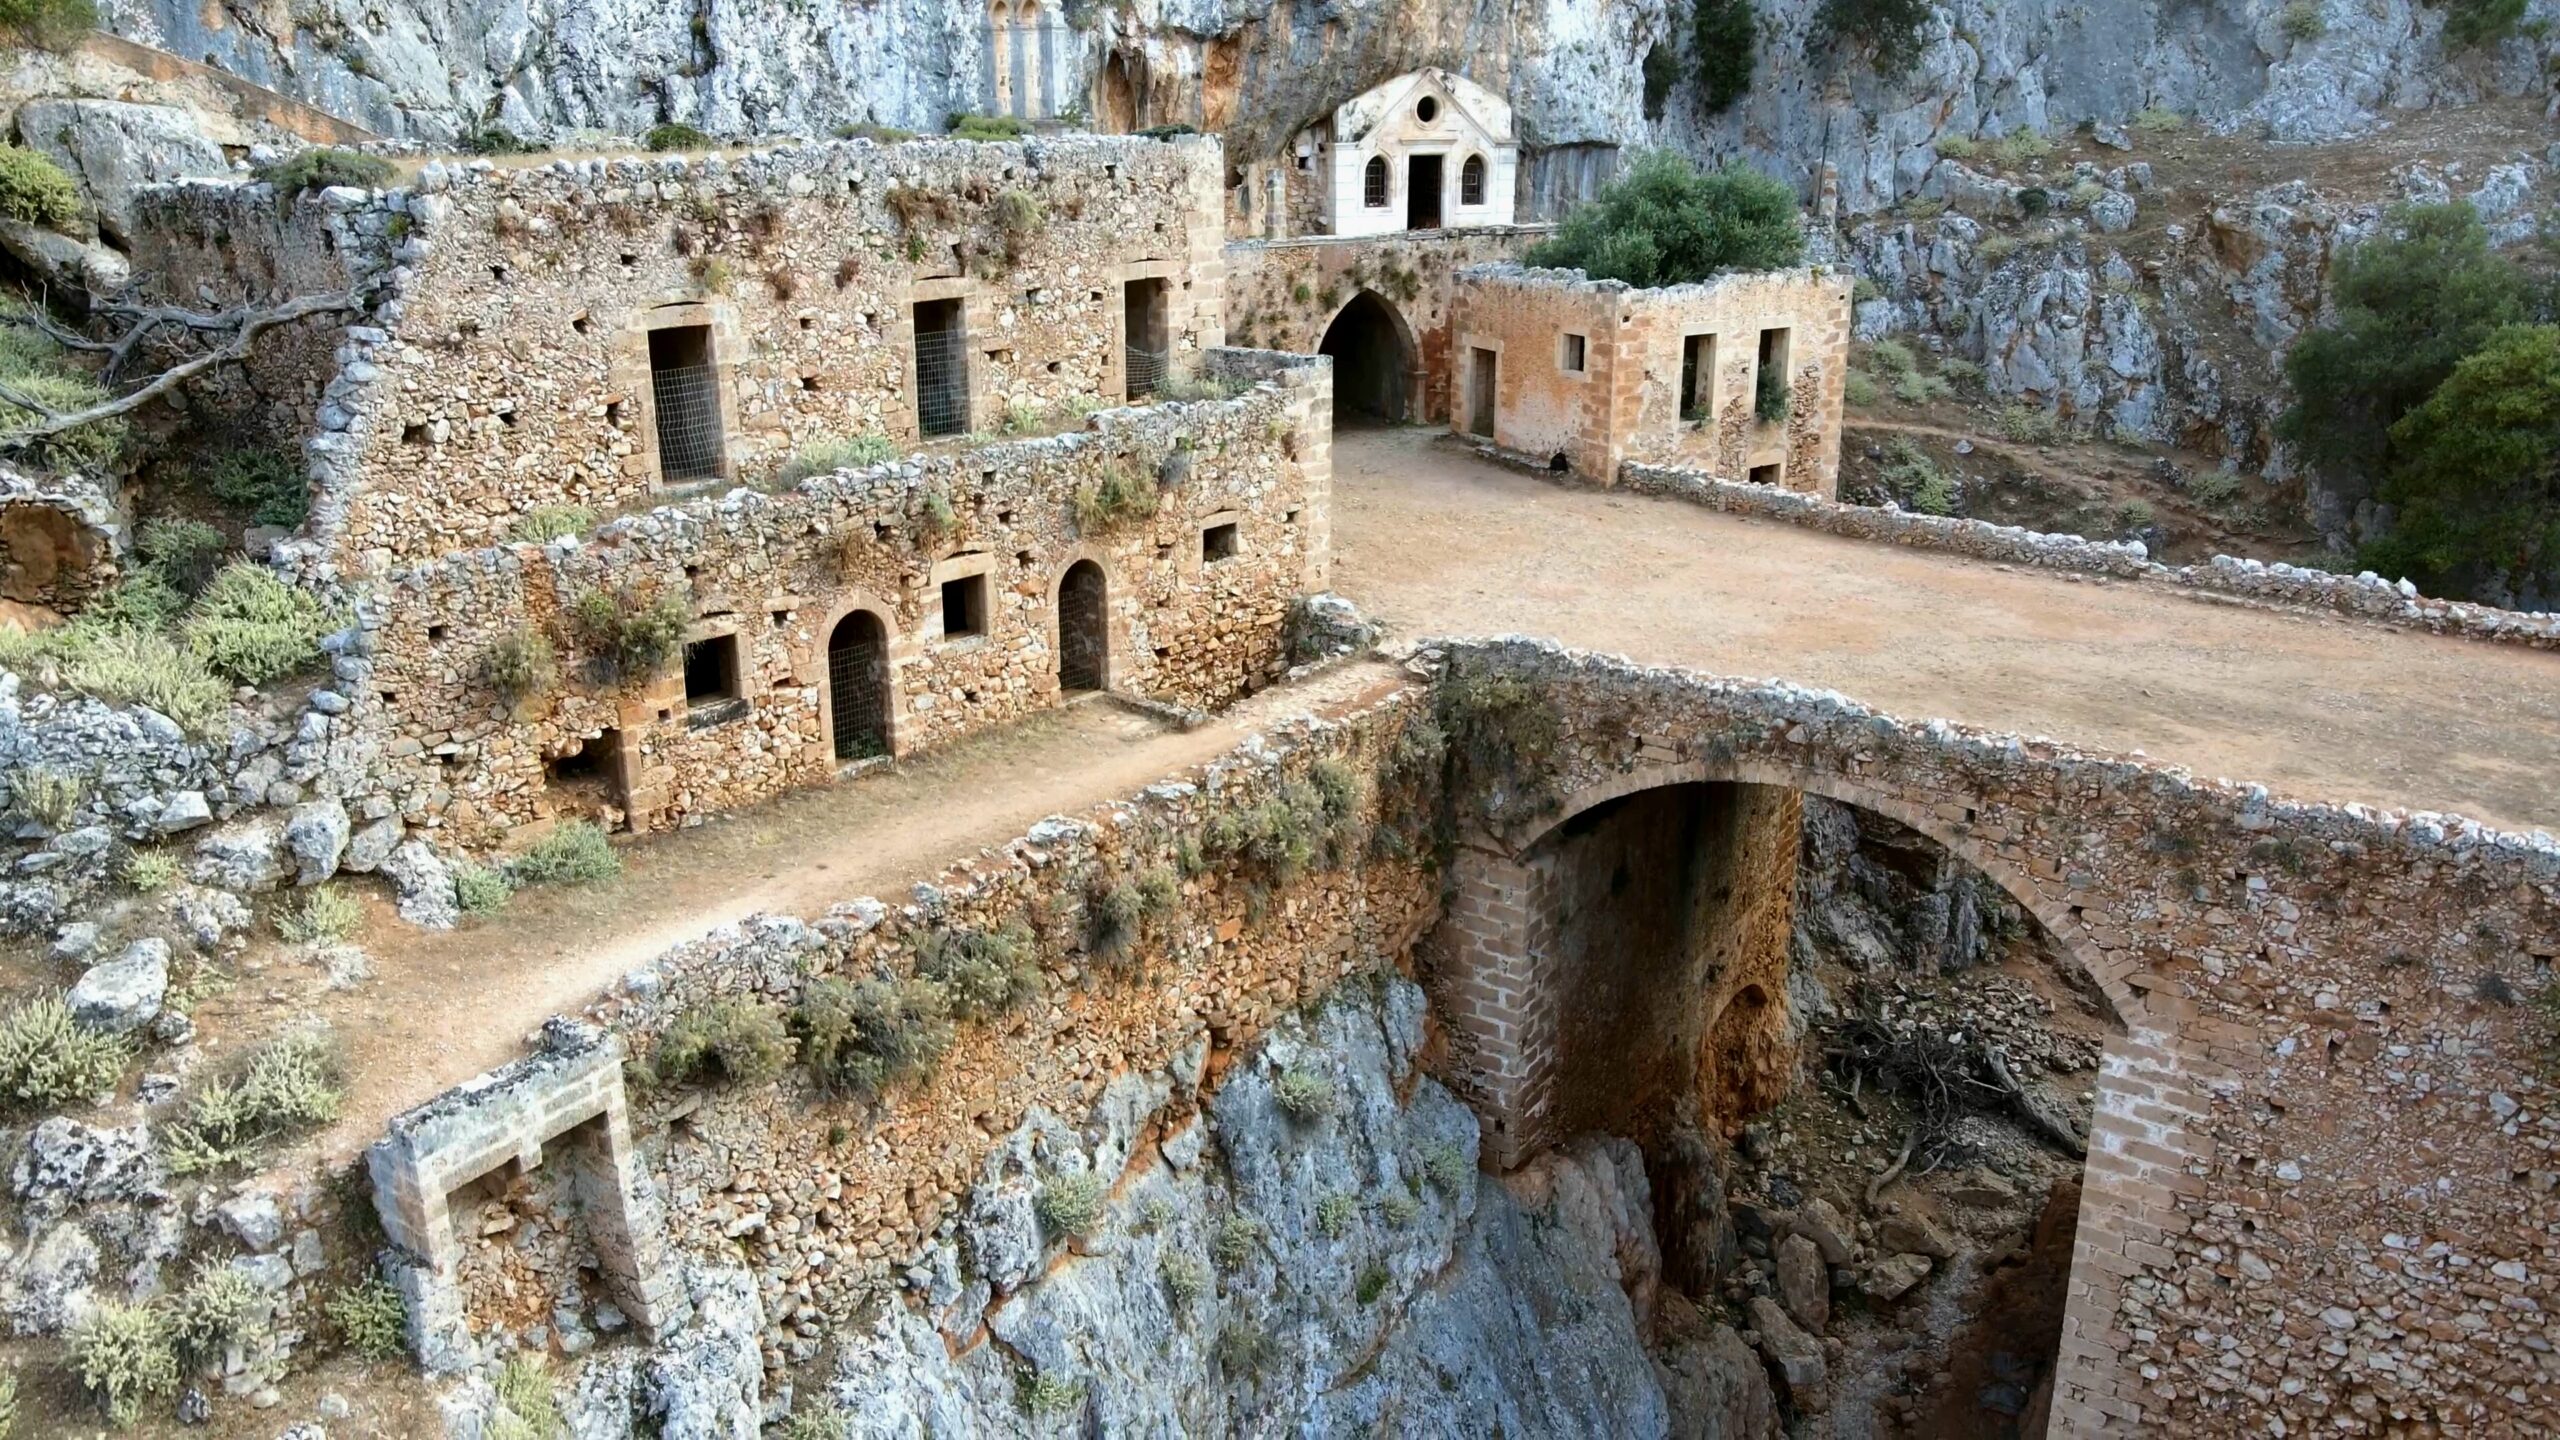 Καθολικό: Το παλαιότερο αλλά άγνωστο μοναστήρι μέσα στο απόκρημνο φαράγγι